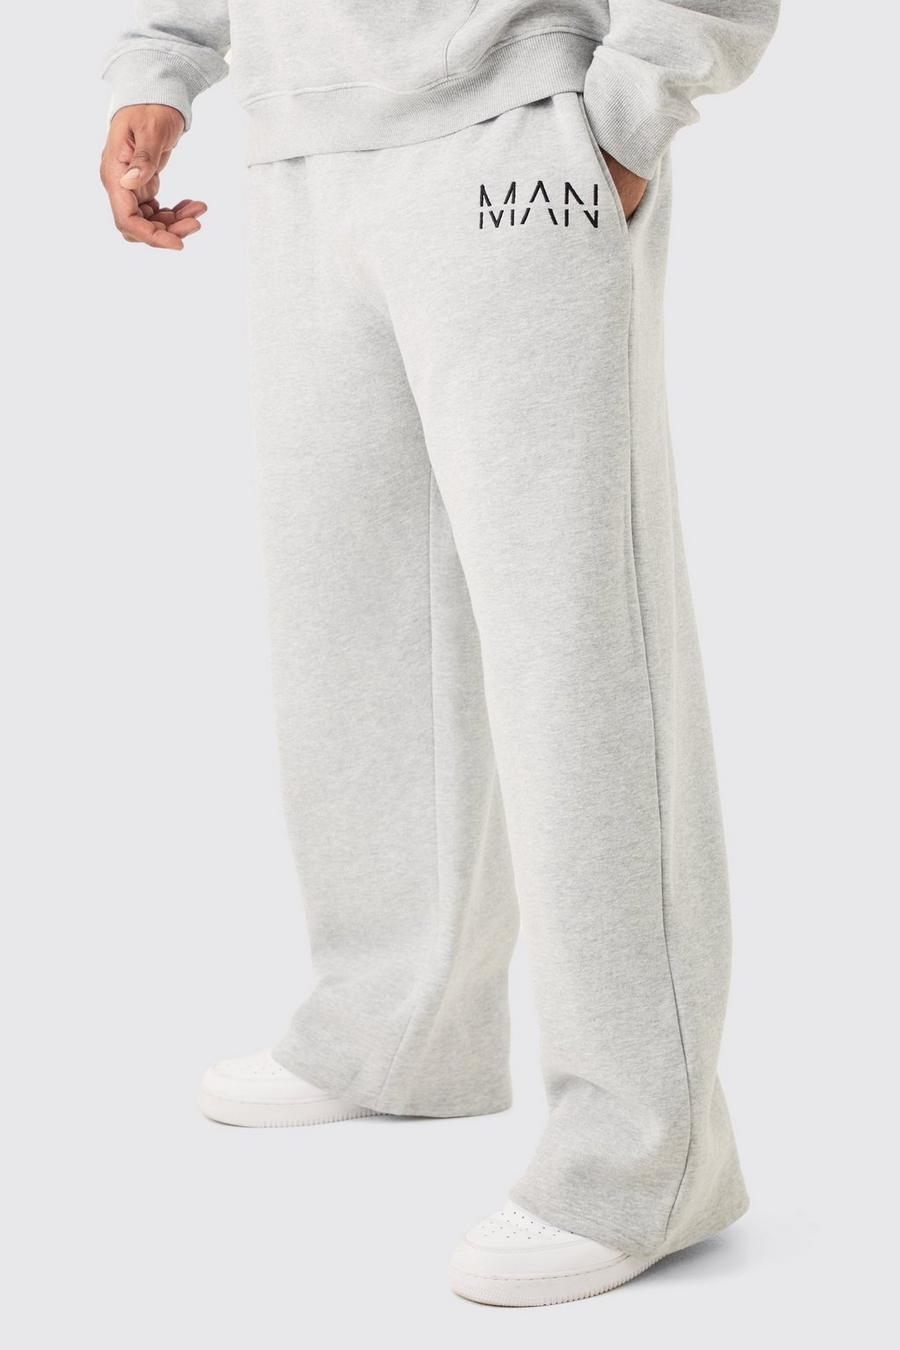 Pantalón deportivo Plus holgado gris jaspeado con letras MAN image number 1